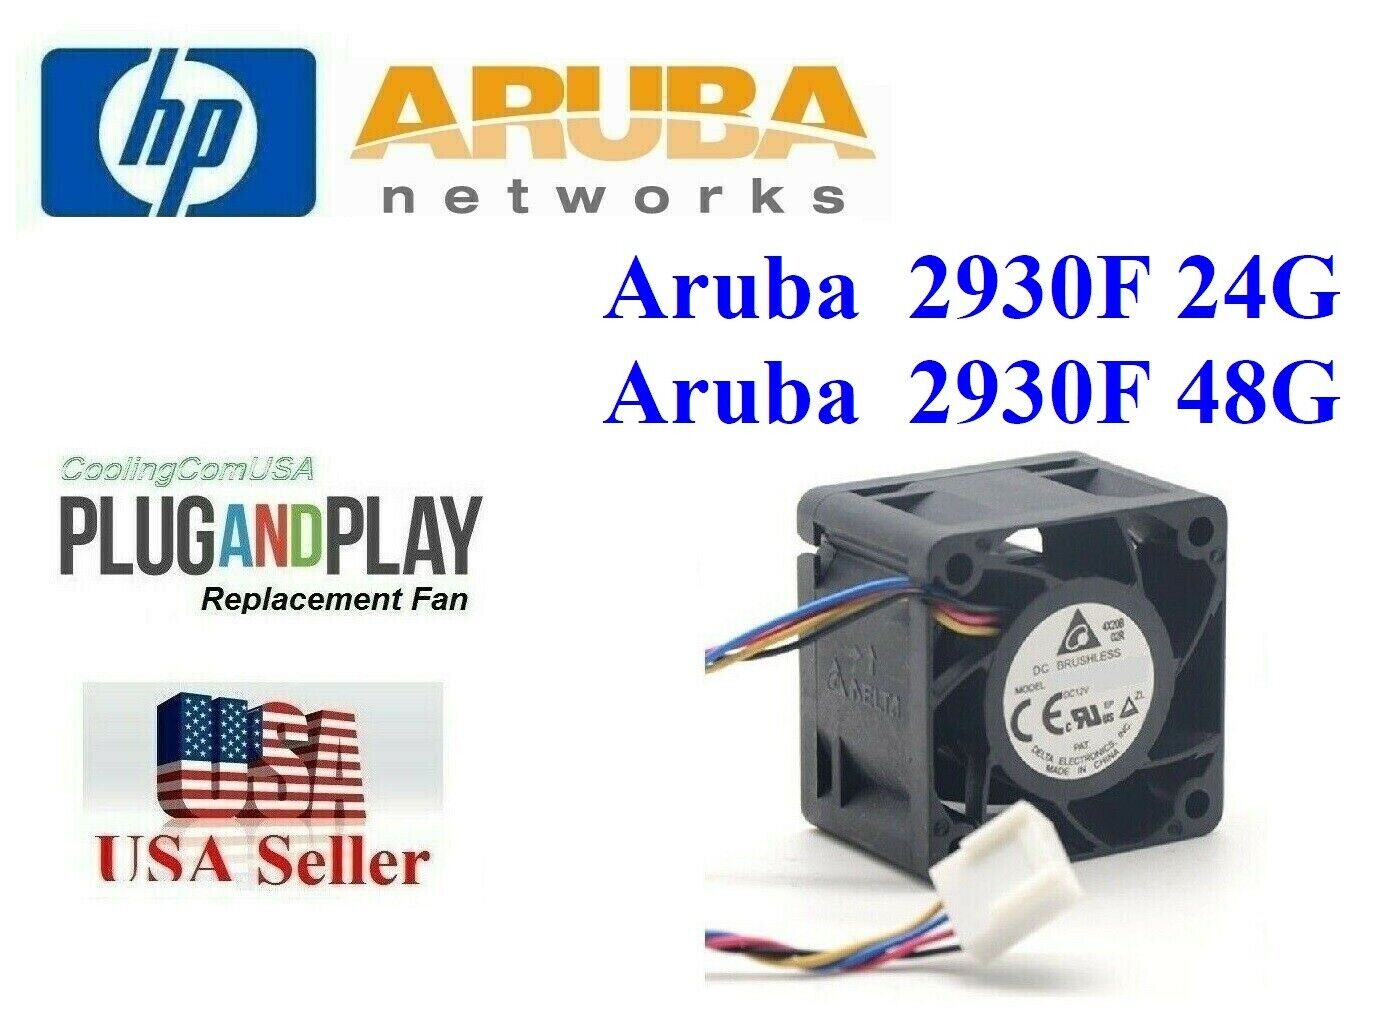 1x *Quiet* Replacement Fan for Aruba 2930F 48G,  JL262A HPE Aruba 2930F fan